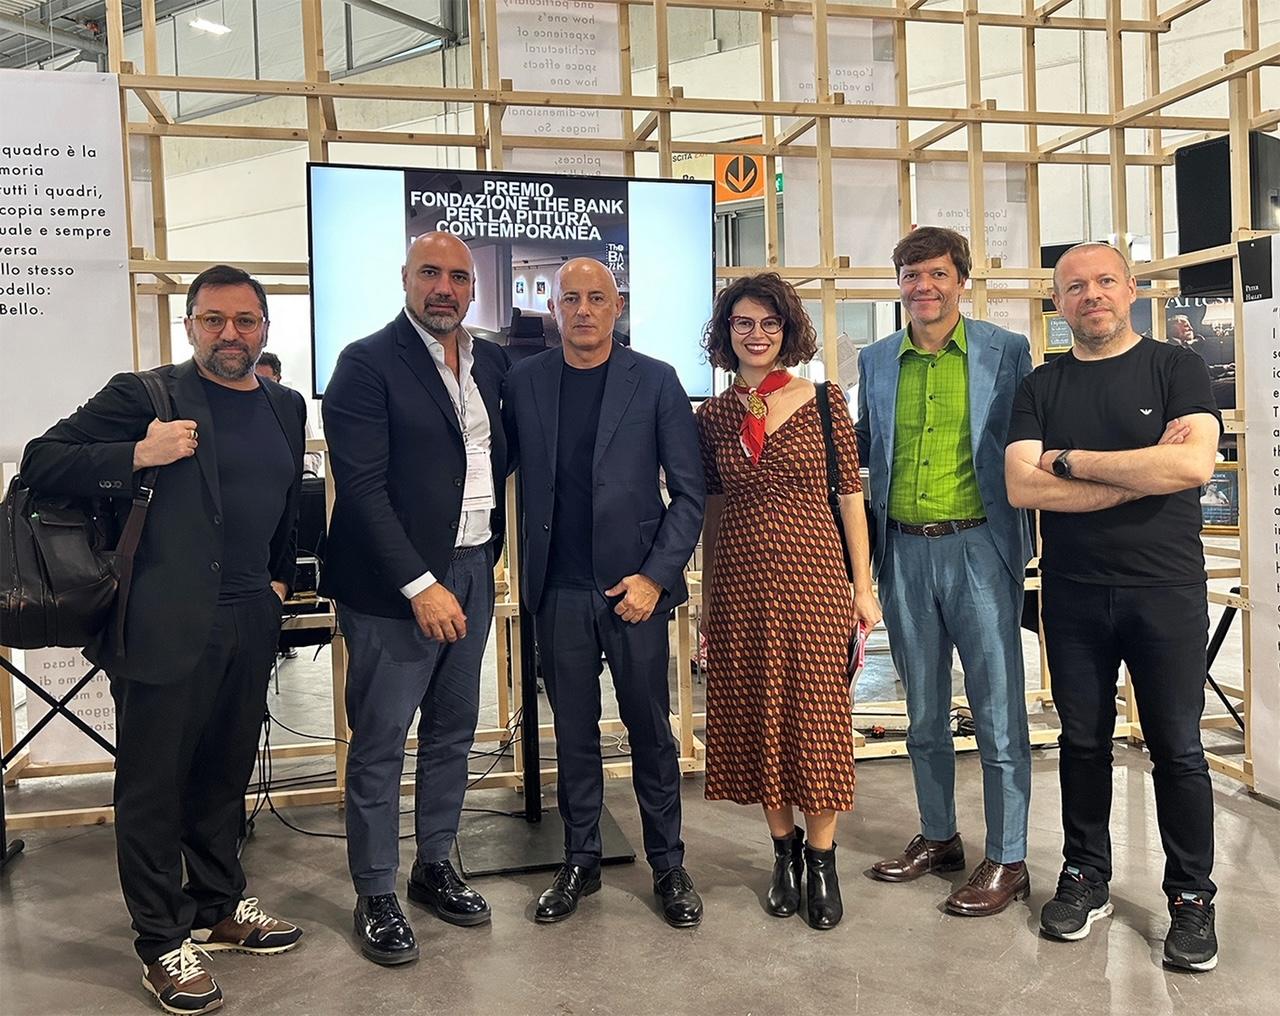 FONDAZIONE THE BANK - La Giuria del Premio Fondazione THE BANK per la pittura contemporanea con Cesare Biasini Selvaggi e Giovanni Bonelli